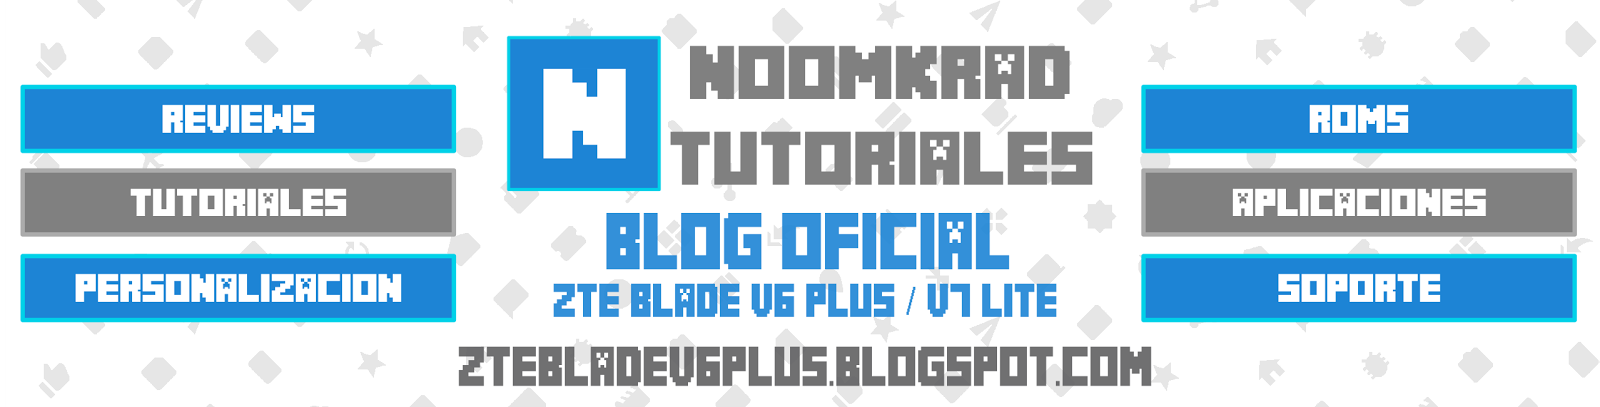 ZTE Blade V6 Plus / Blog Oficial